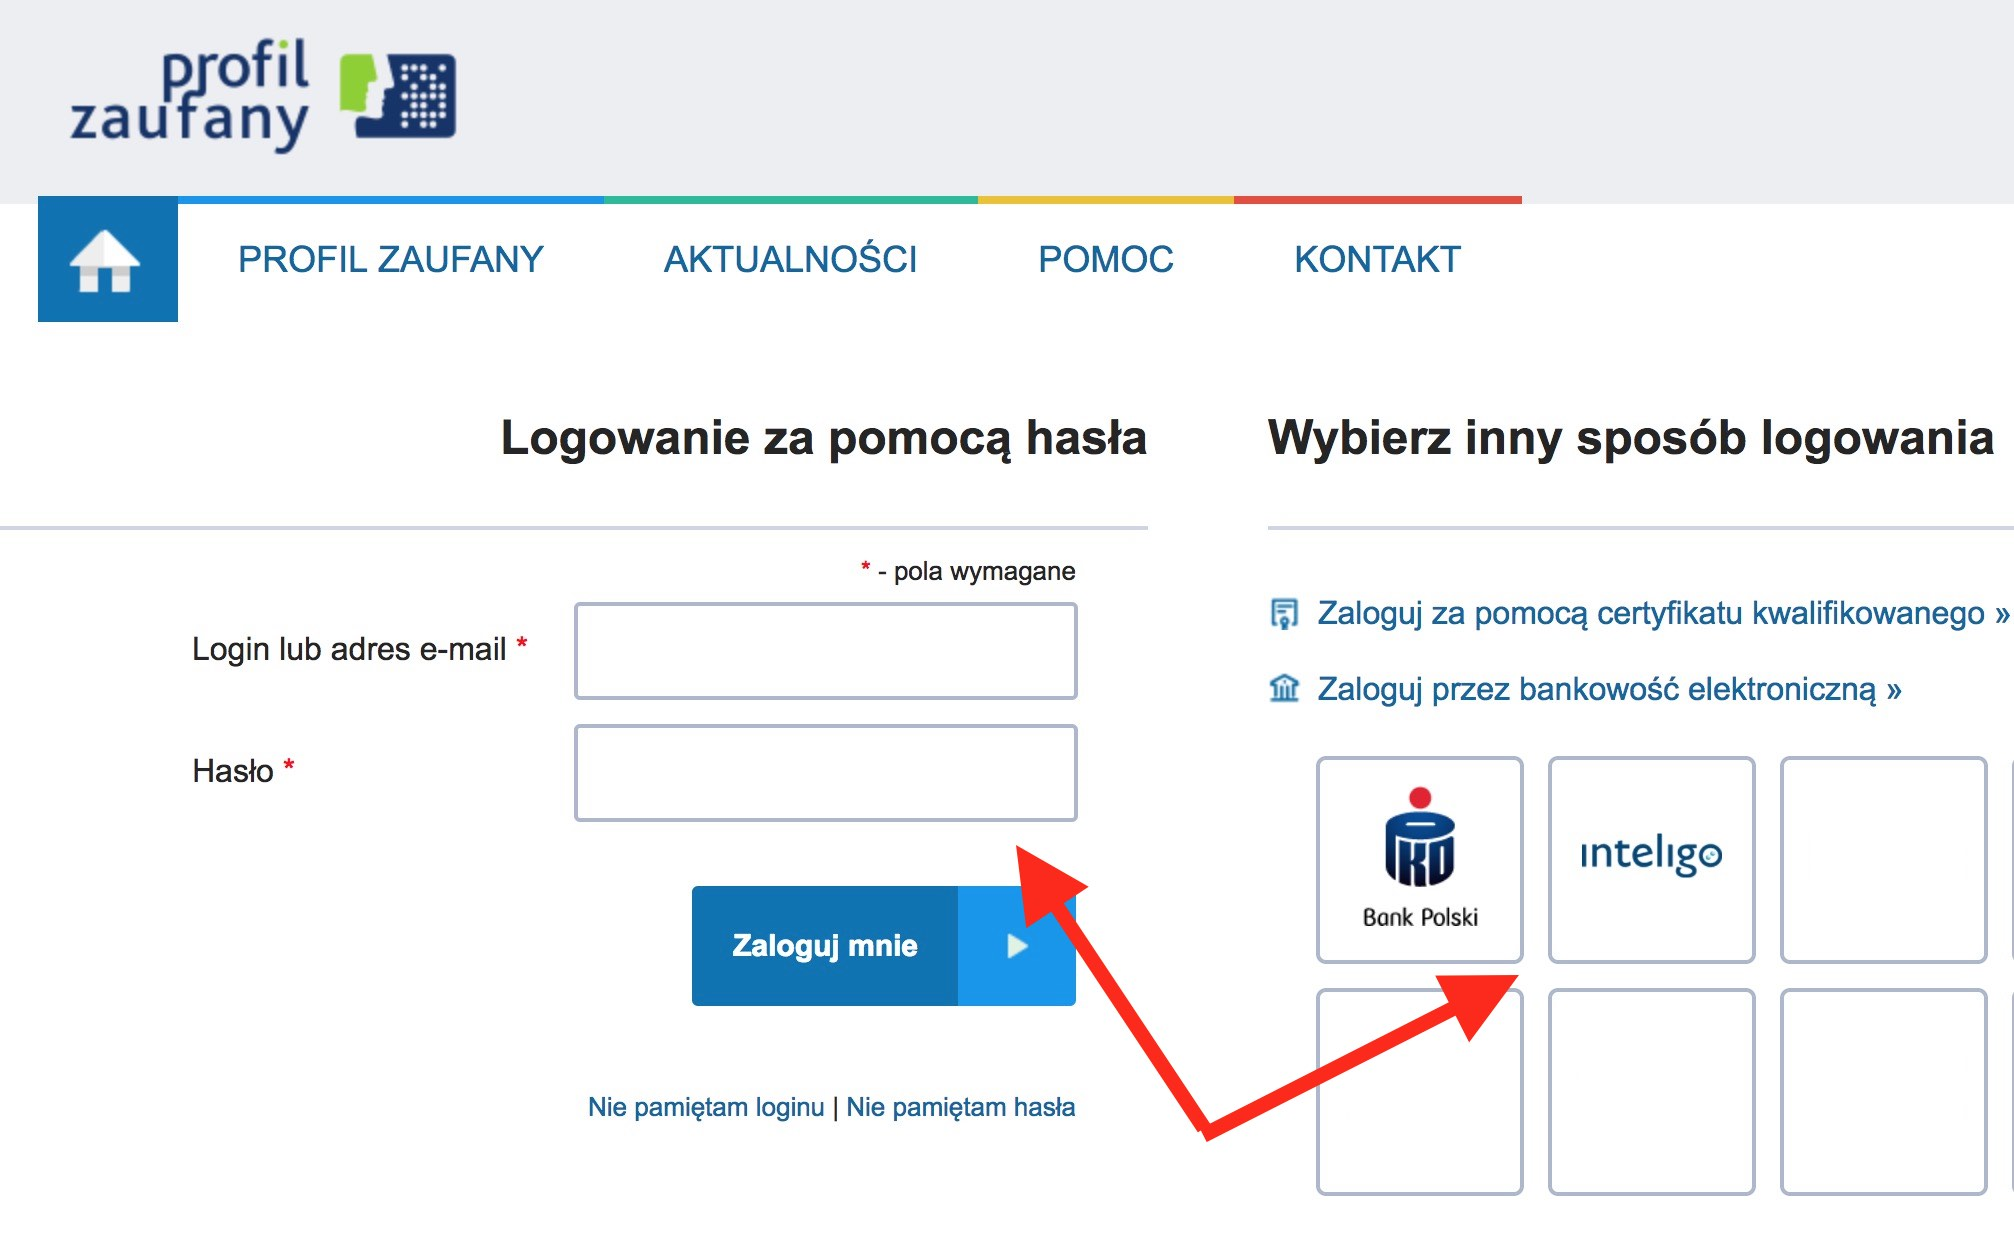 Zostaniesz przeniesiony na stronę Profilu Zaufanego, gdzie należy dokonać logowania za pomocą hasła lub przez bankowość elektroniczną PKO Banku Polskiego lub Inteligo